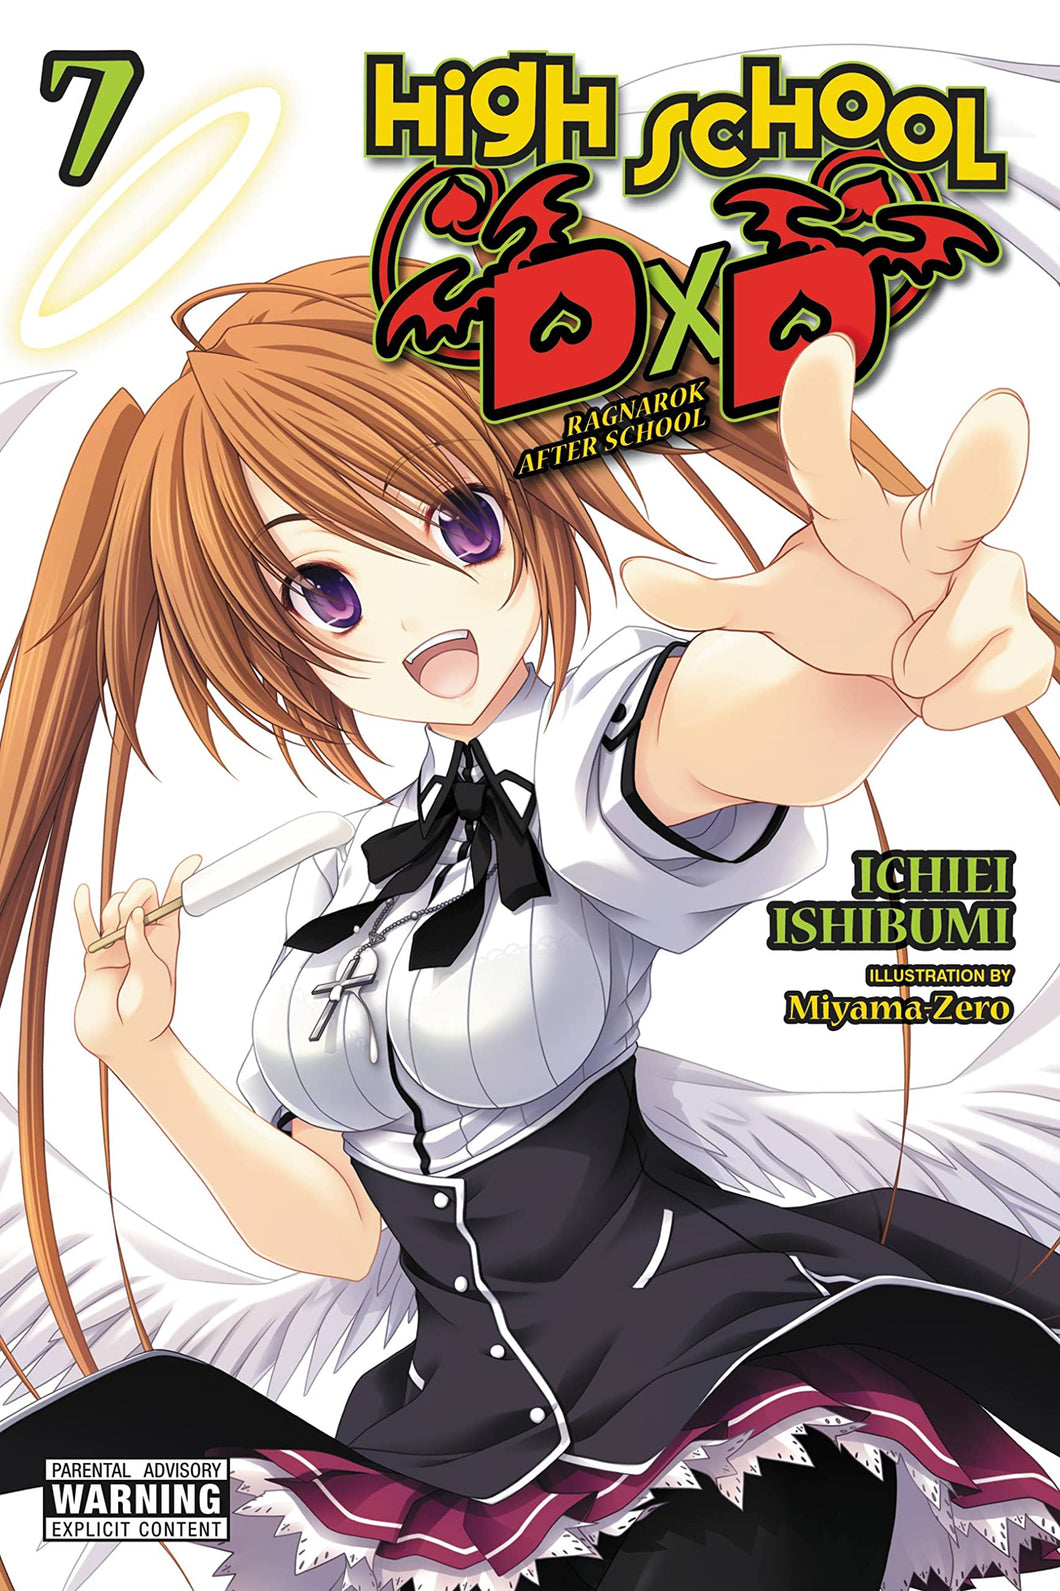 High School DXD Light Novel Volume 7